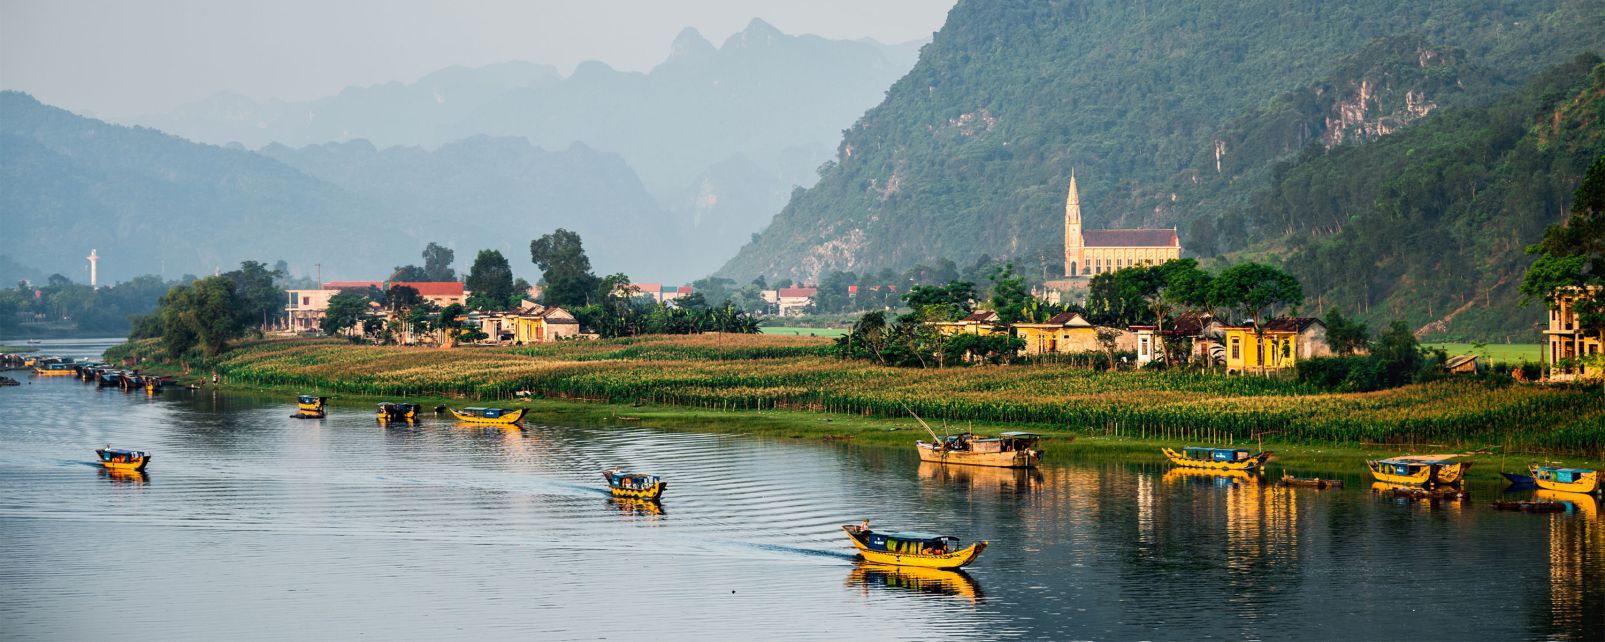 Sông Son Quảng Bình - Trên dòng sông Son thơ mộng